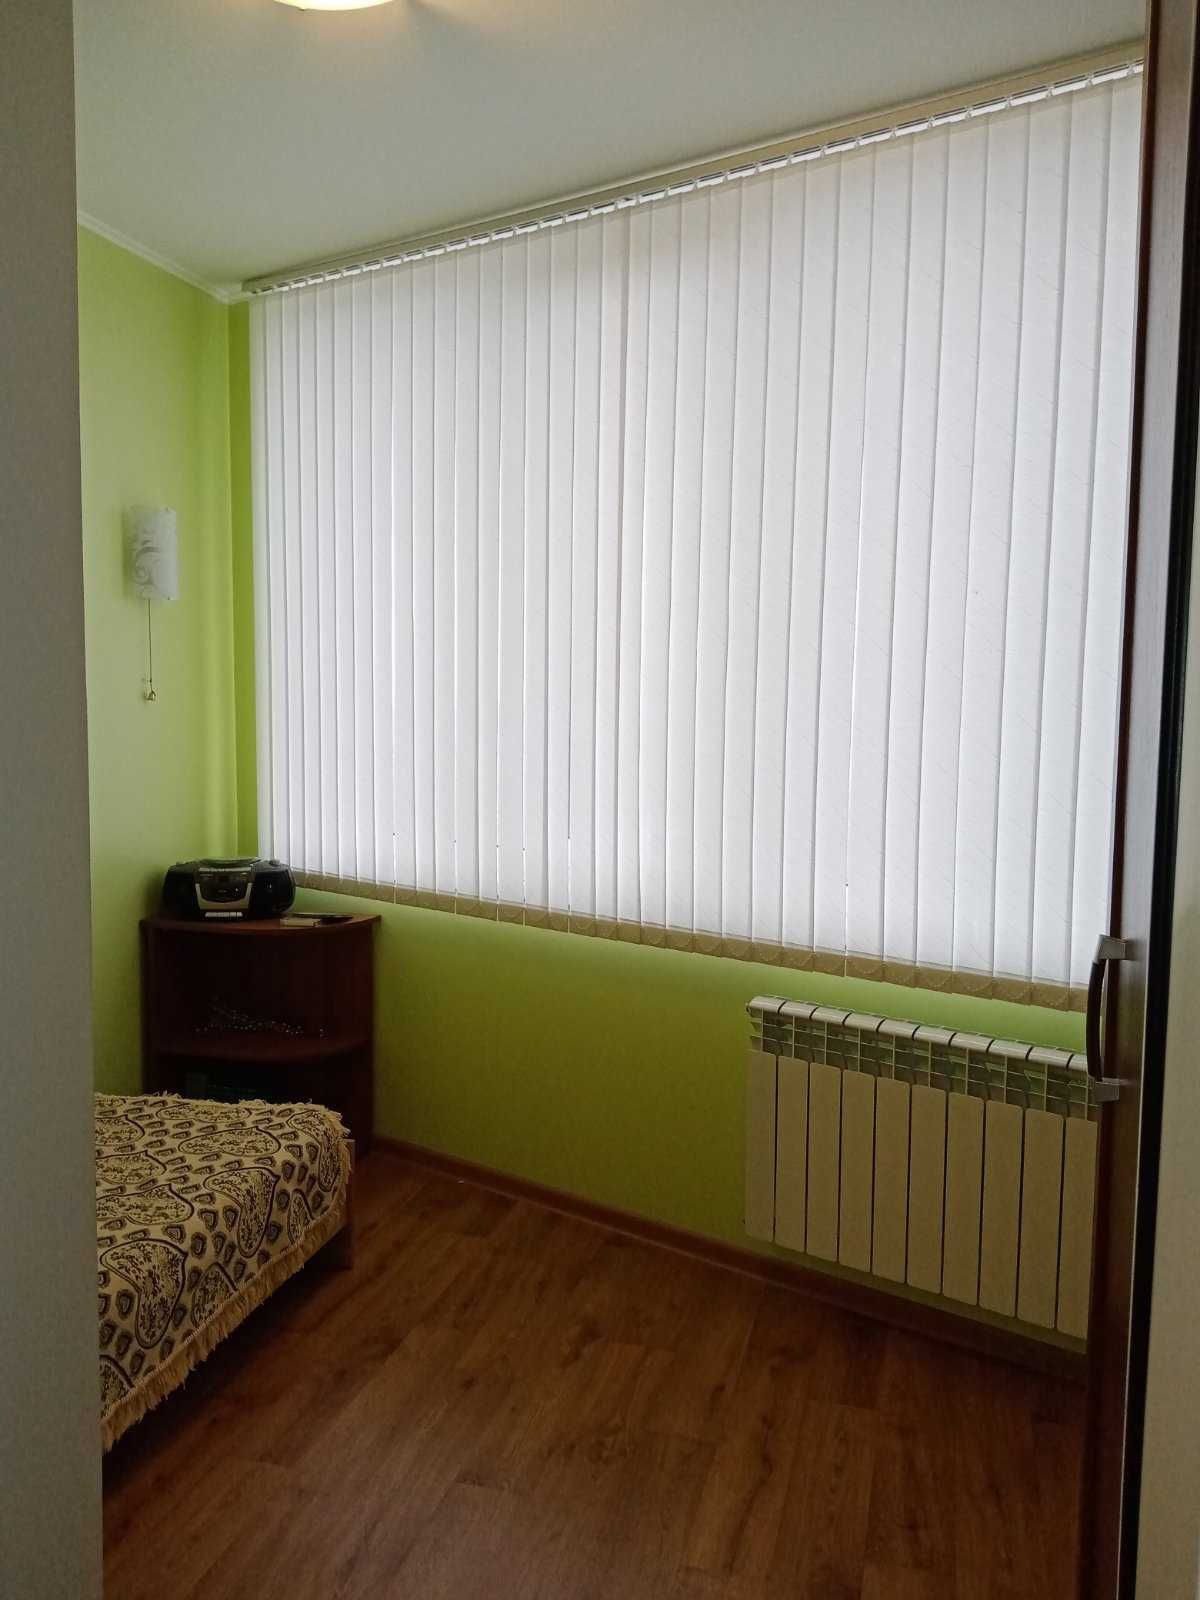 Продам двухкомнатную квартиру с ремонтом город Черноморск.